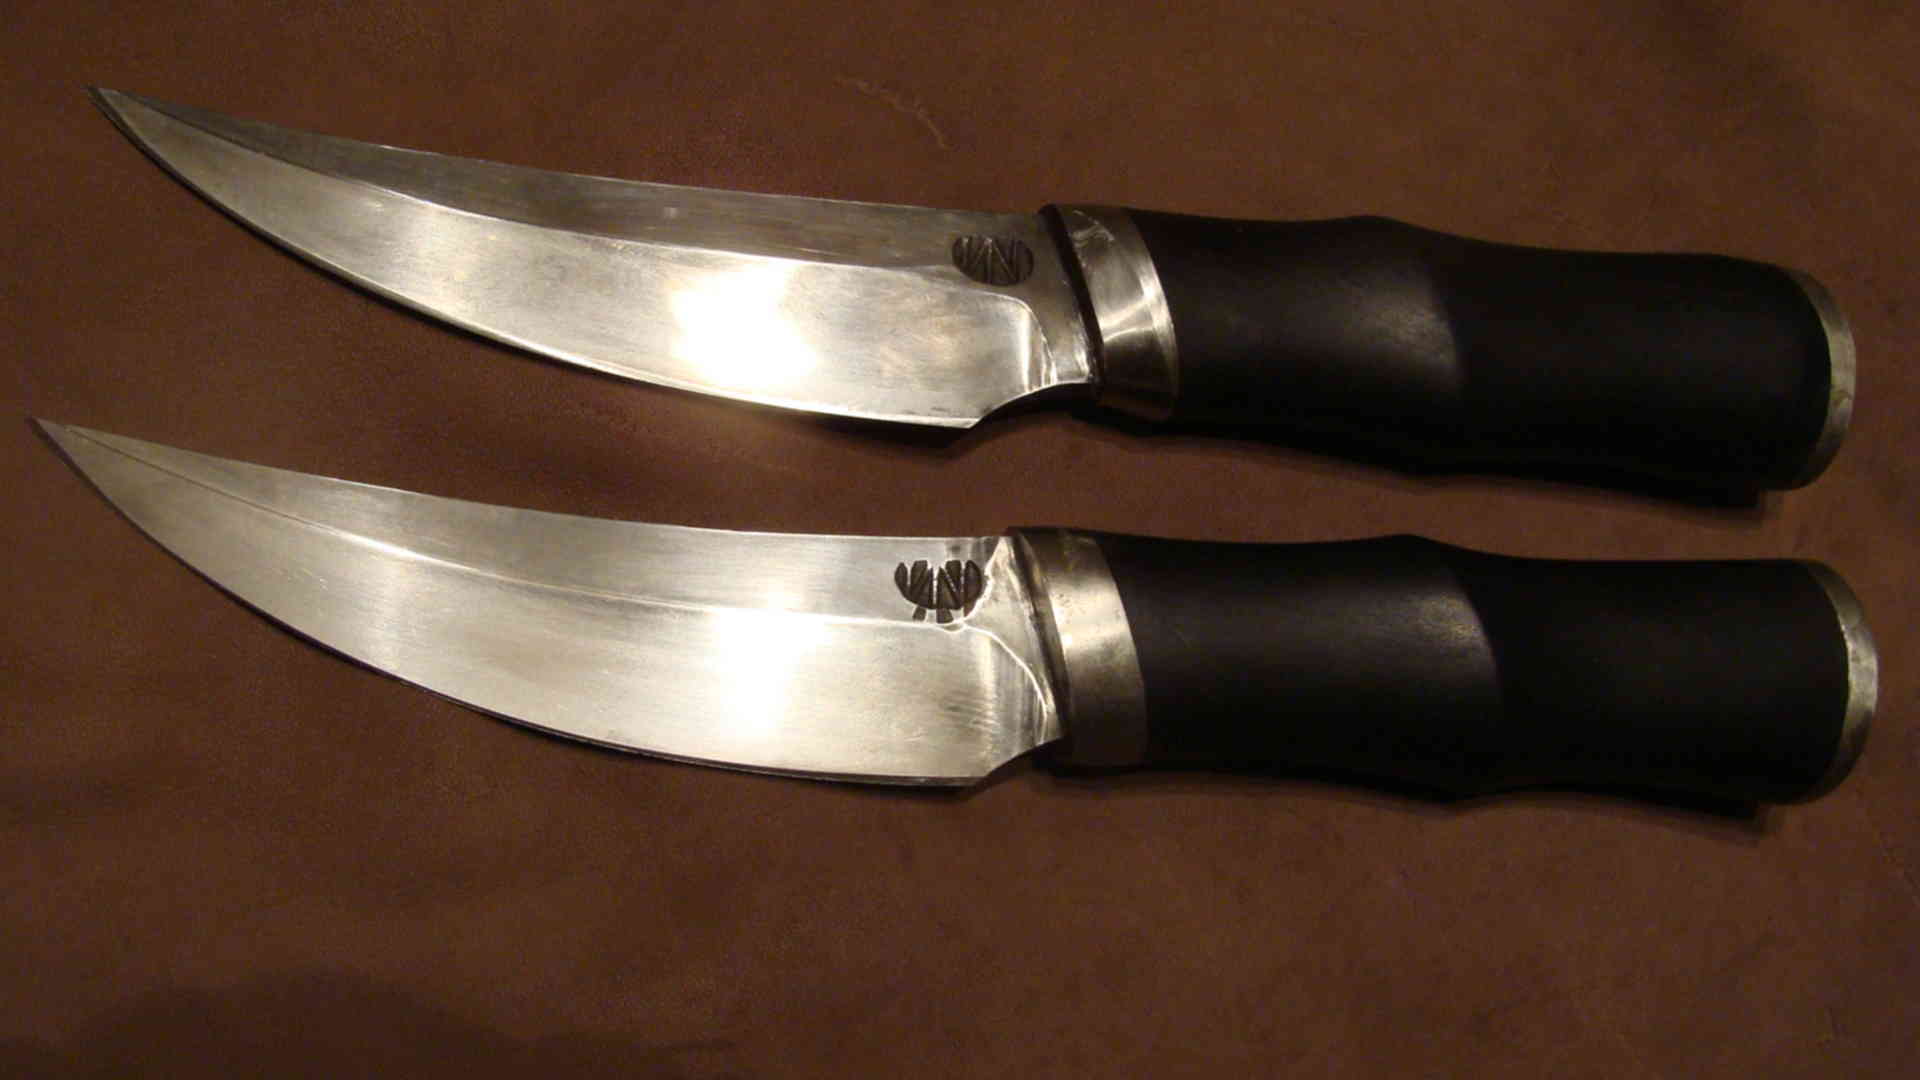 Рускнайф. Формы ножей. Формы лезвий ножей. Охотничьи ножи необычной формы. Формы клинков для ножей.